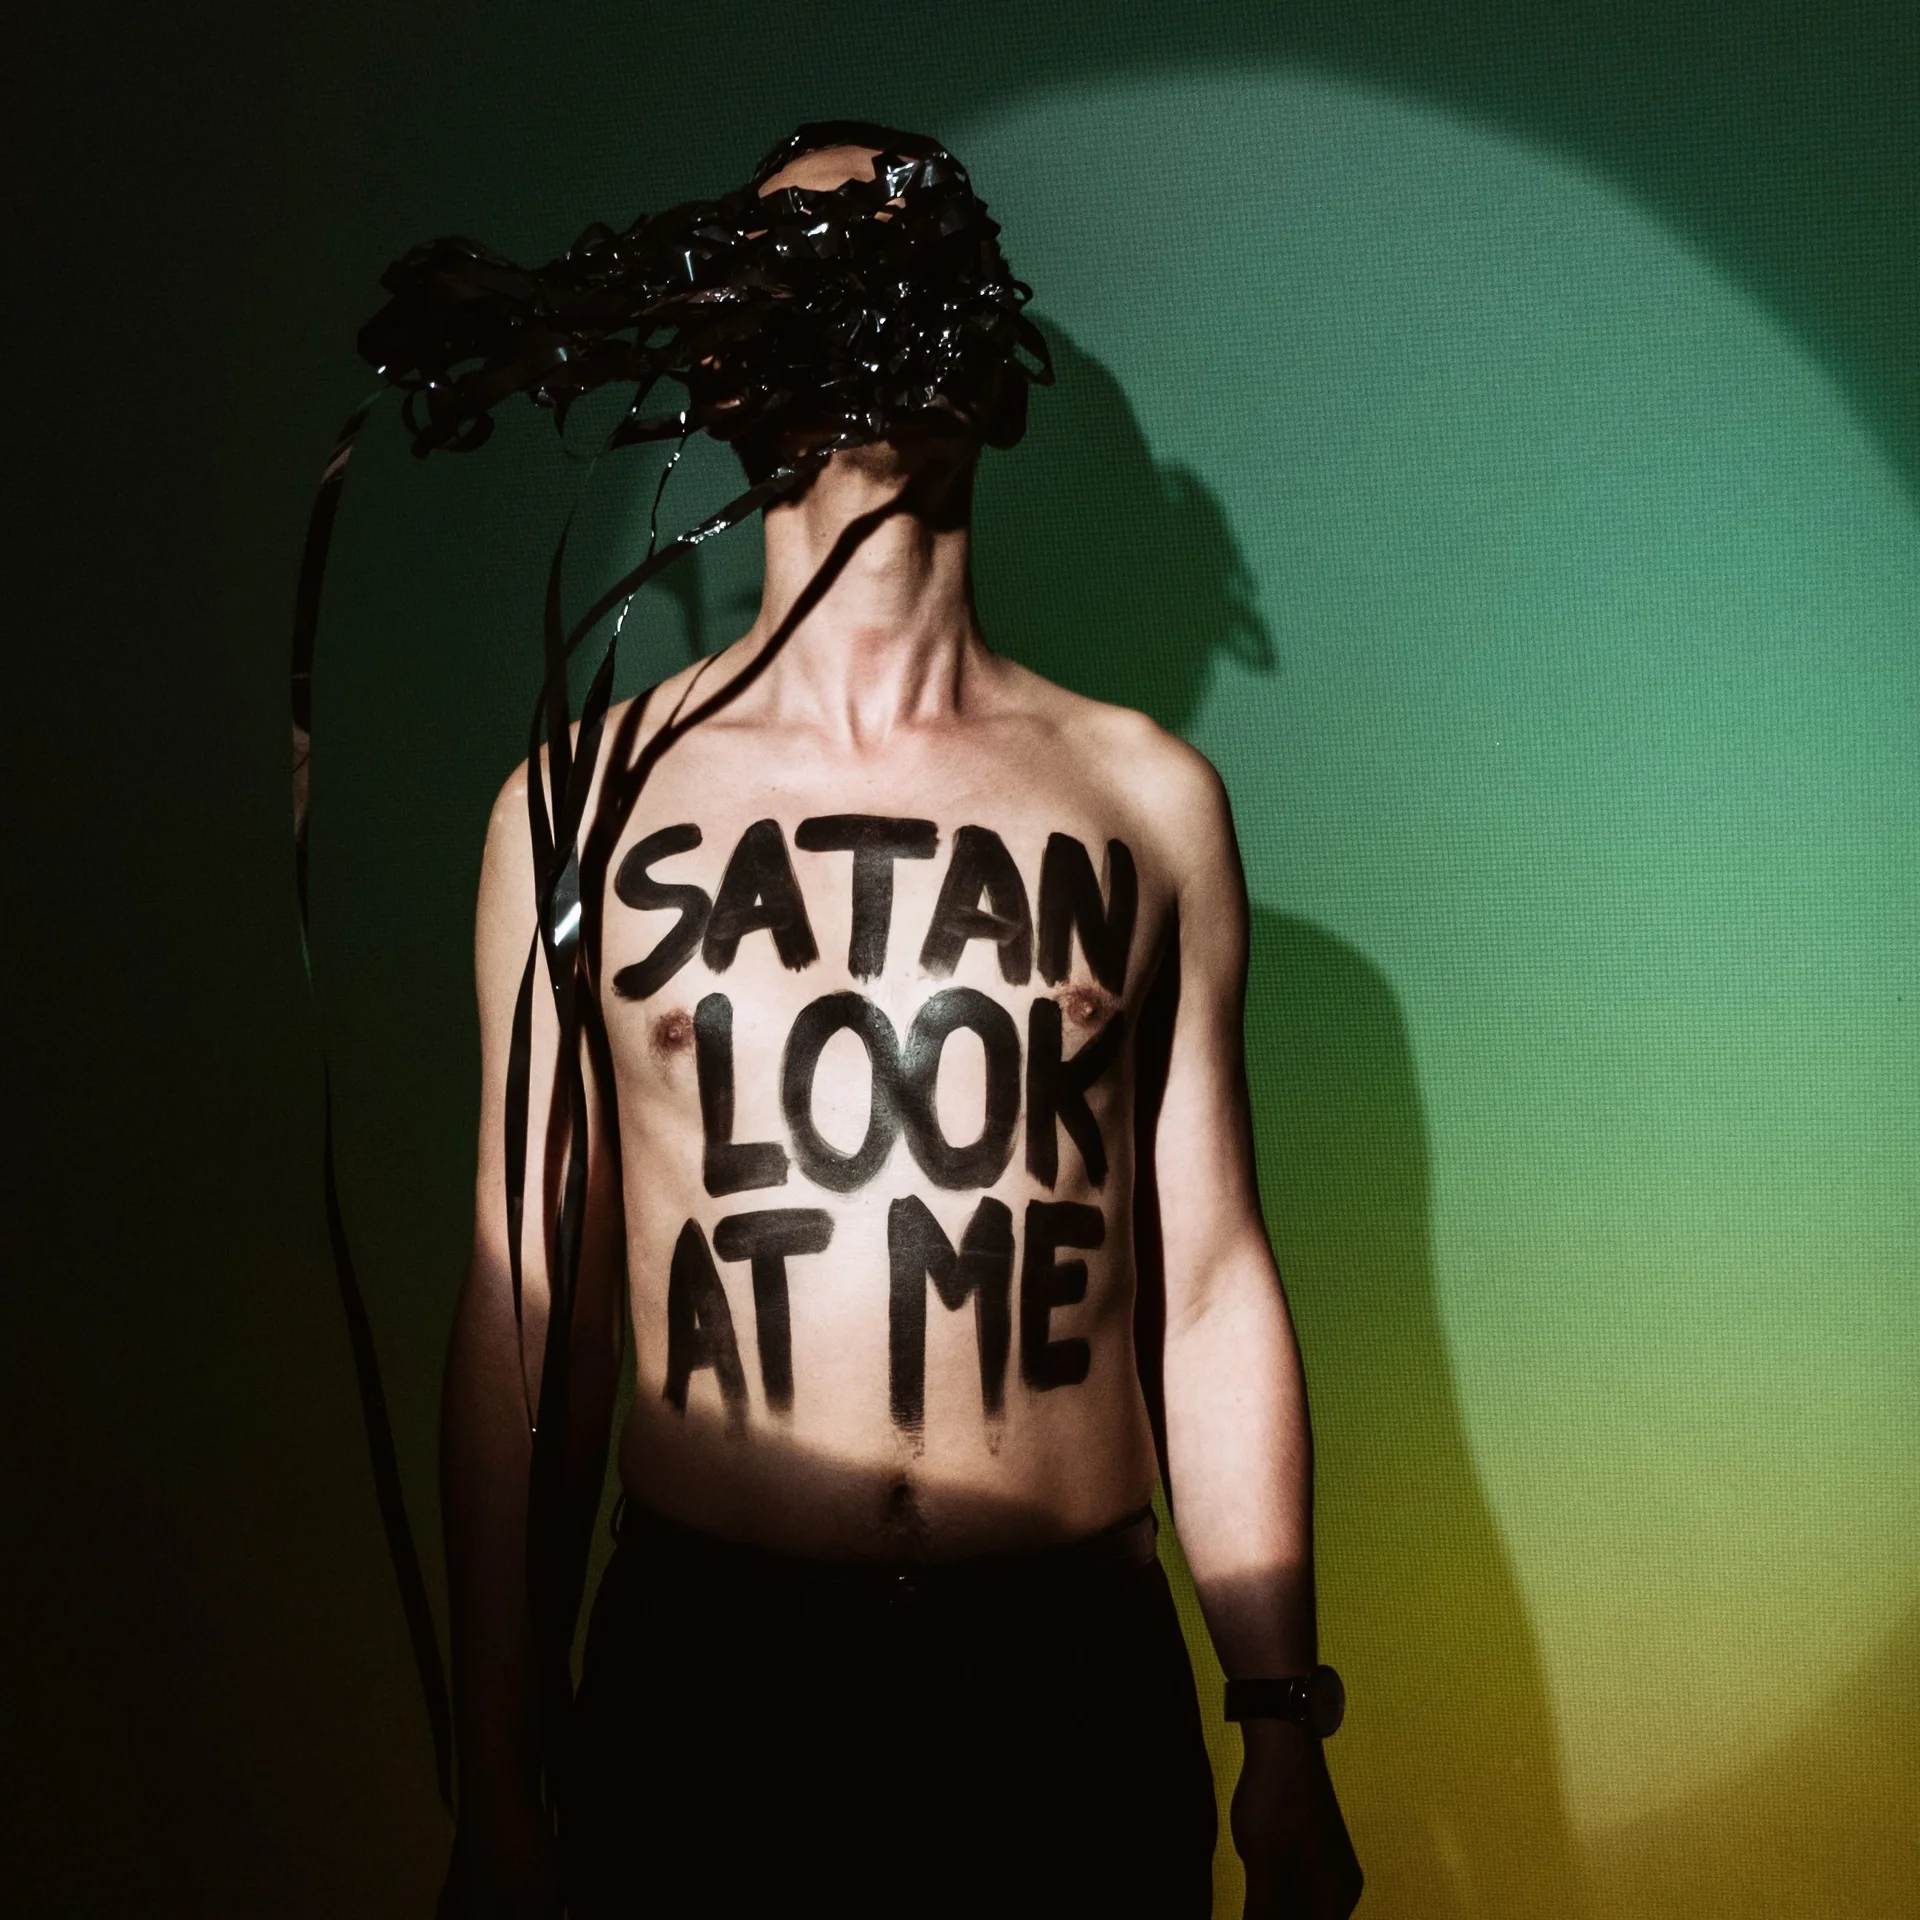 Mężczyzna bez koszulki trzyma w zębach kłębek czarnej taśmy magnetofonowej. Na klatce piersiowej ma napis: "Satan look at me".